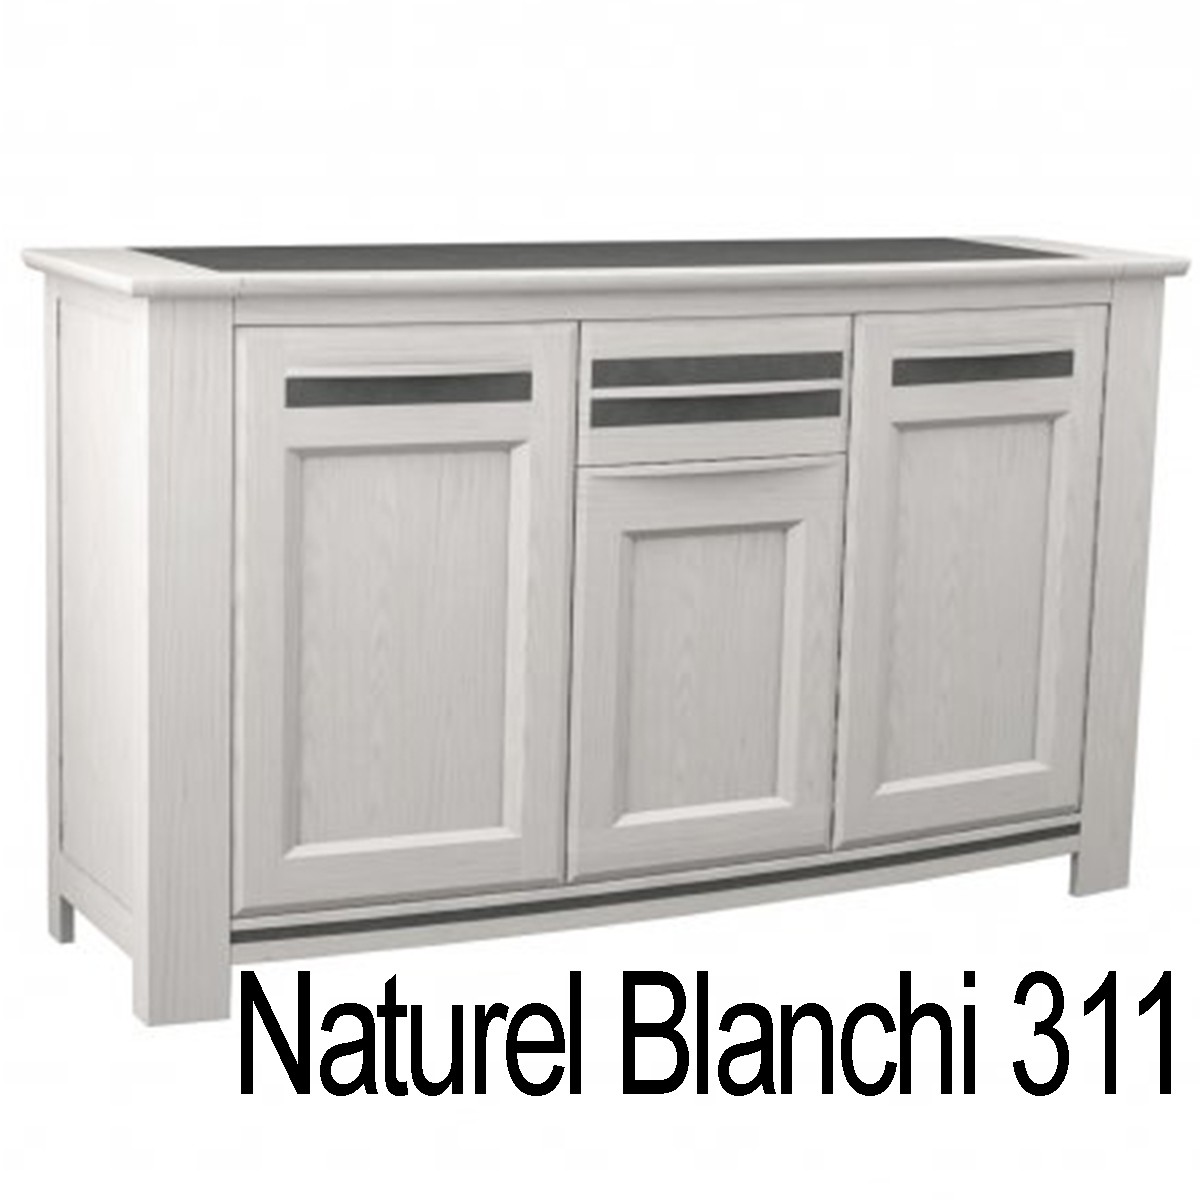 T311 Naturel blanchi